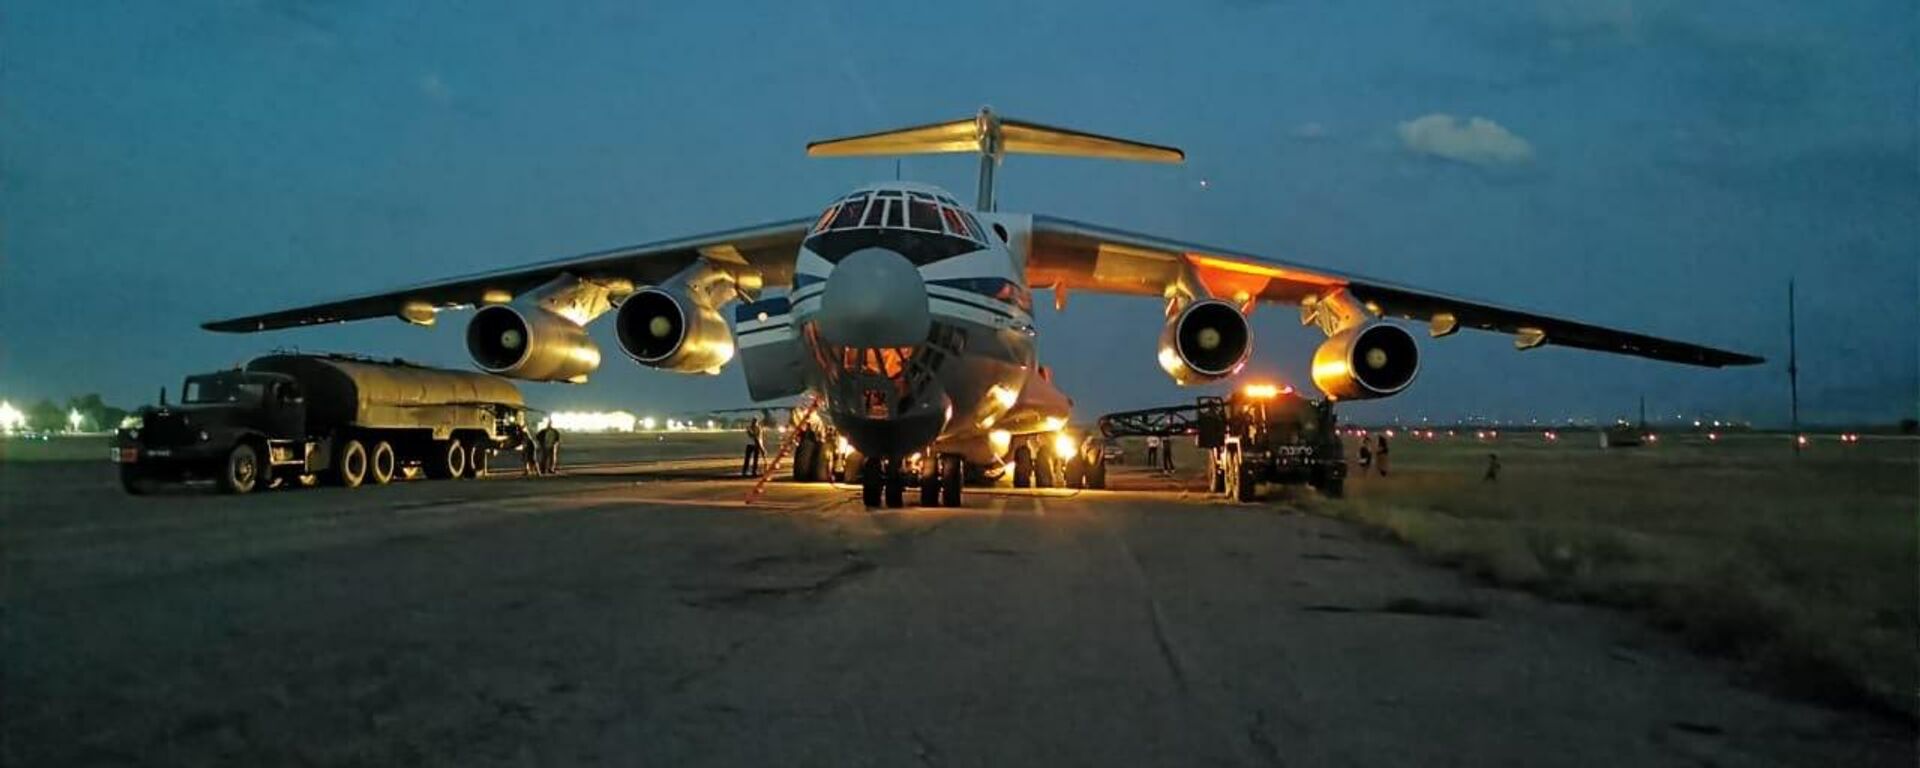 Грузовой самолет Ил-76МД во время эвакуации граждан РФ из Афганистана. - Sputnik Узбекистан, 1920, 30.08.2021